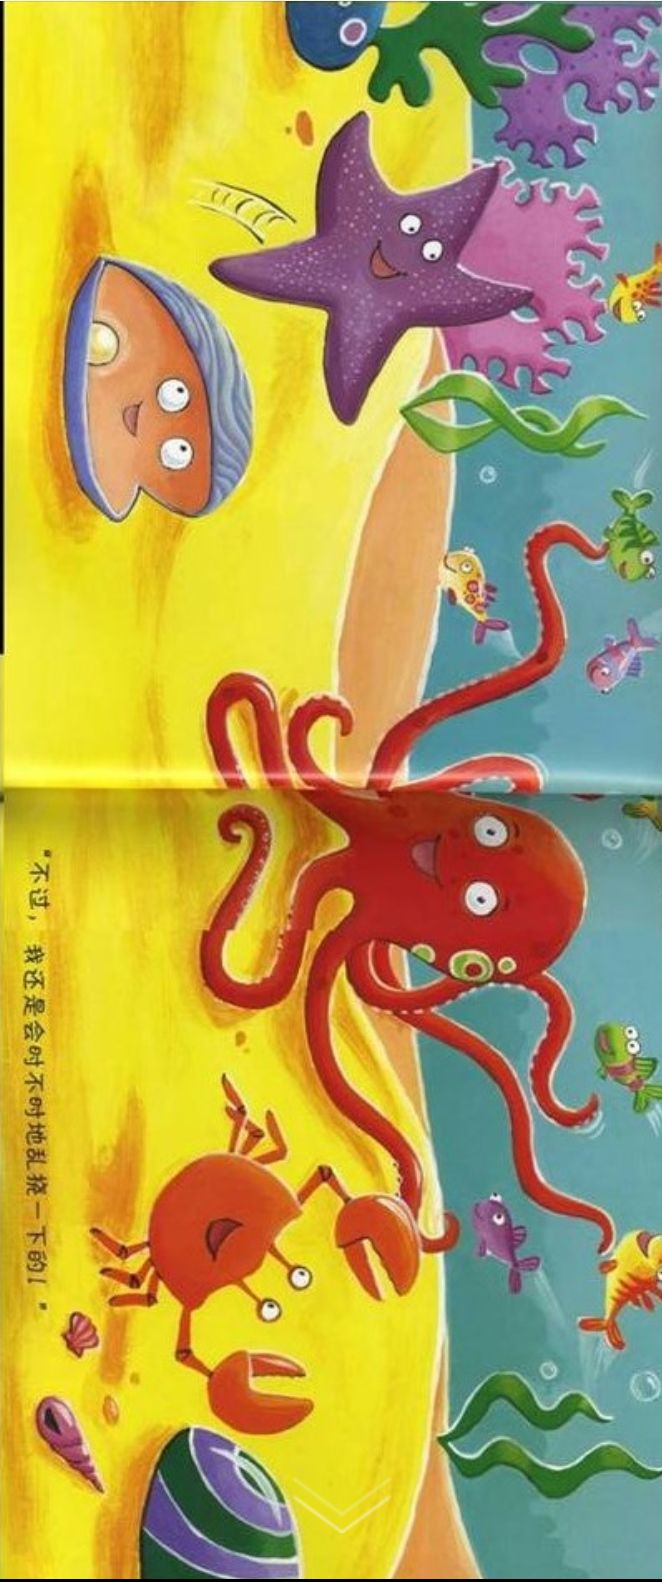 【绘声绘色】绘本——乱挠痒痒的章鱼